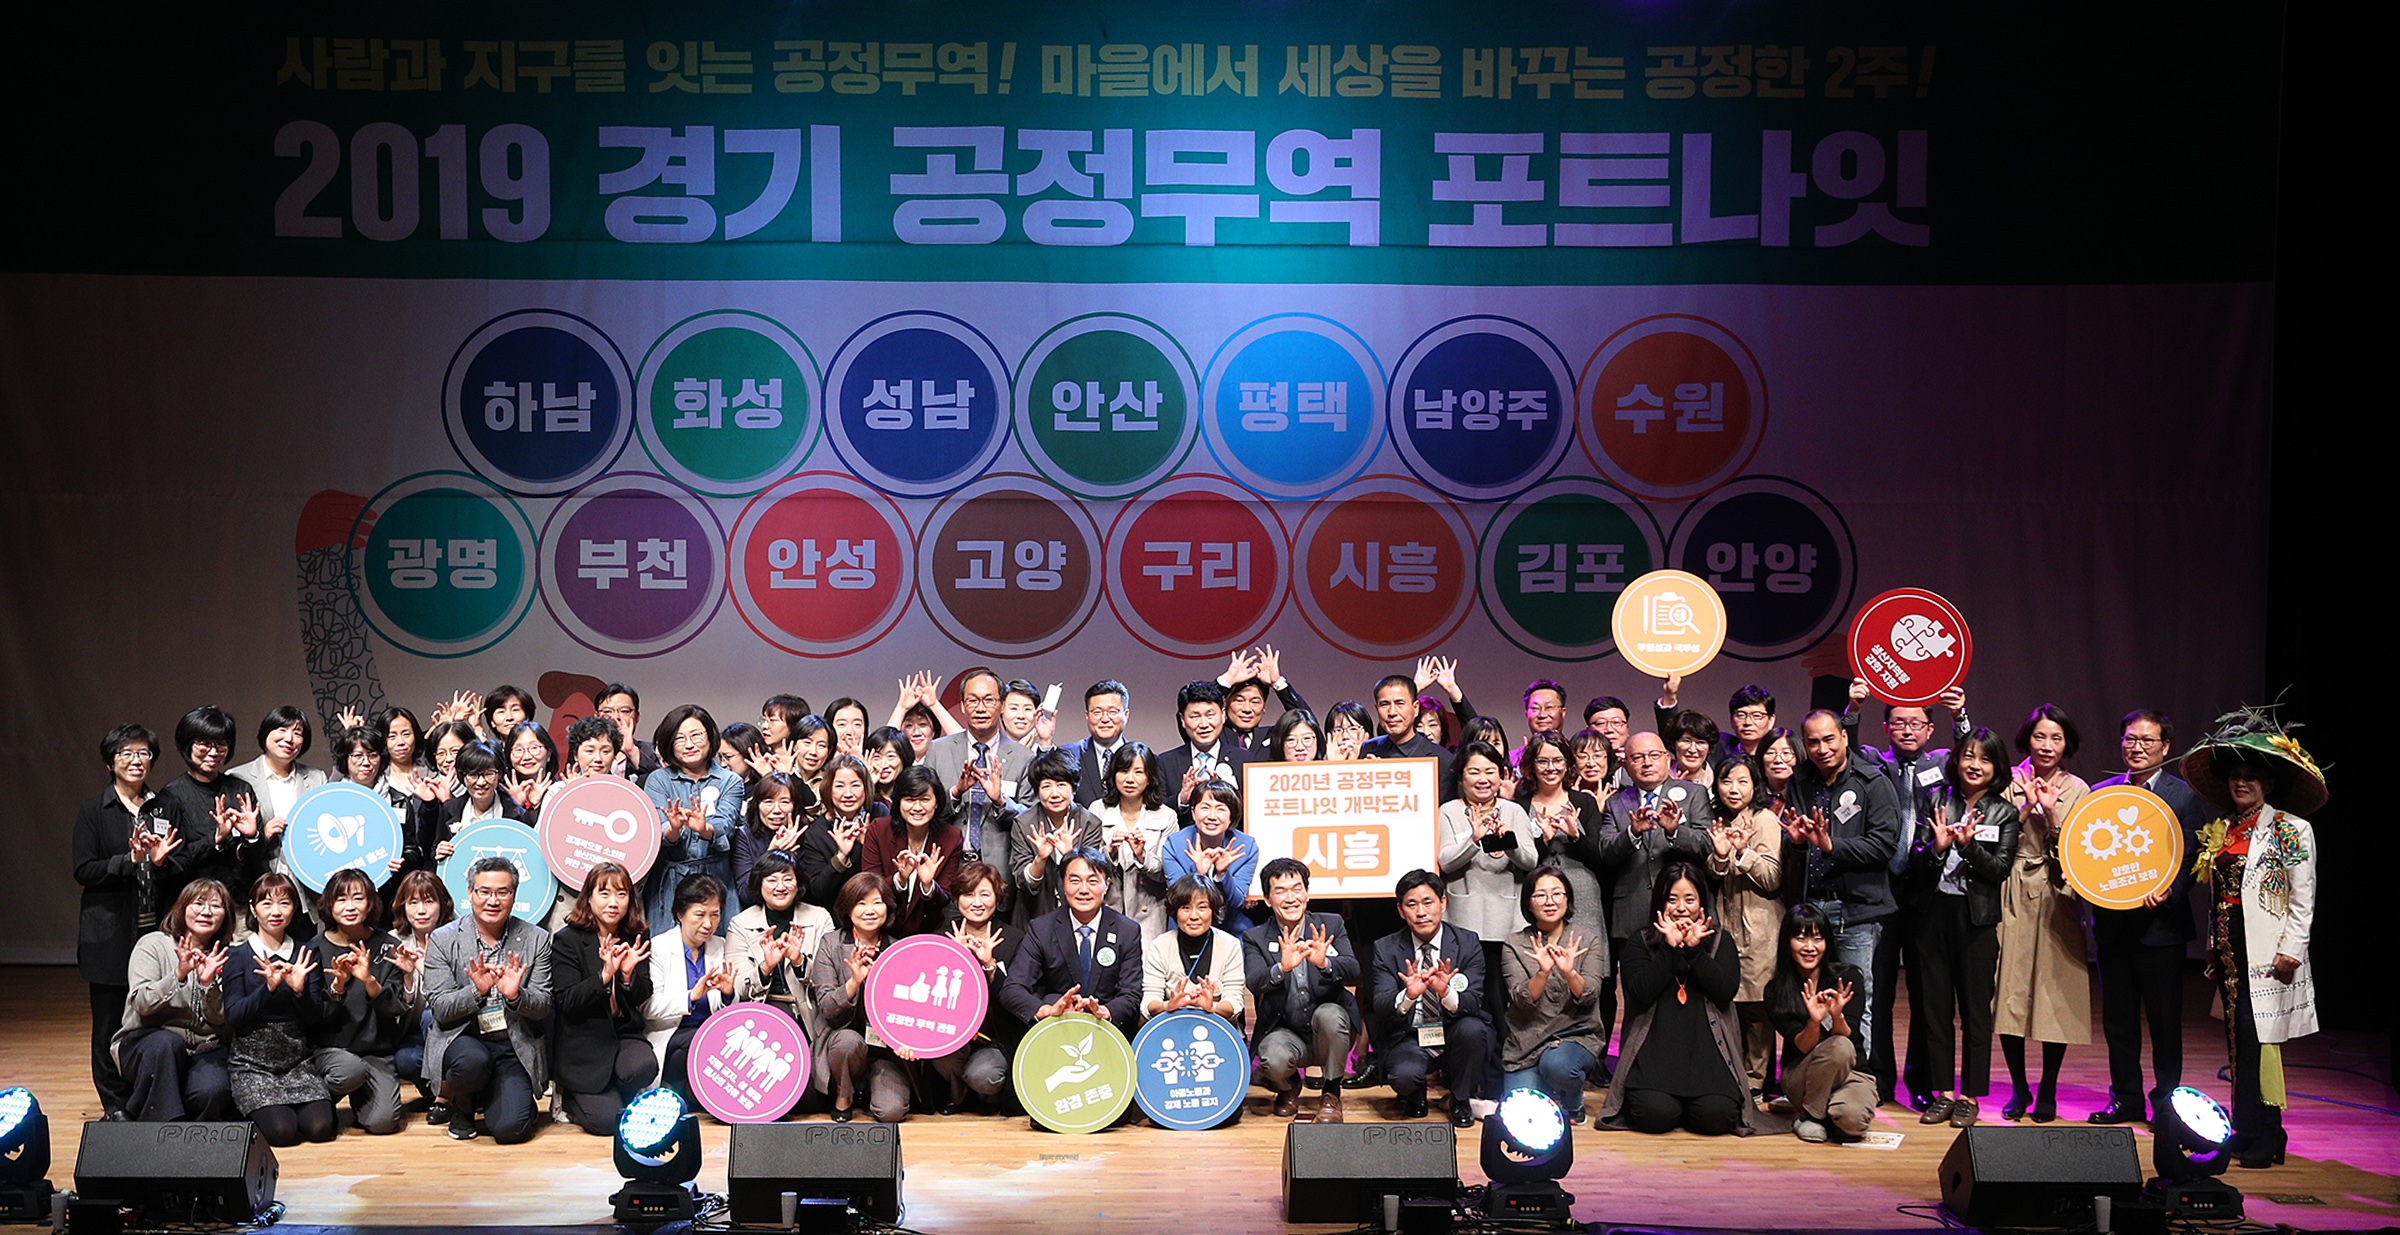 경기도는 25일 오전 하남문화예술회관에서 ‘2019 경기 공정무역 포트나잇(FortNight)’ 개막식을 개최했다. 